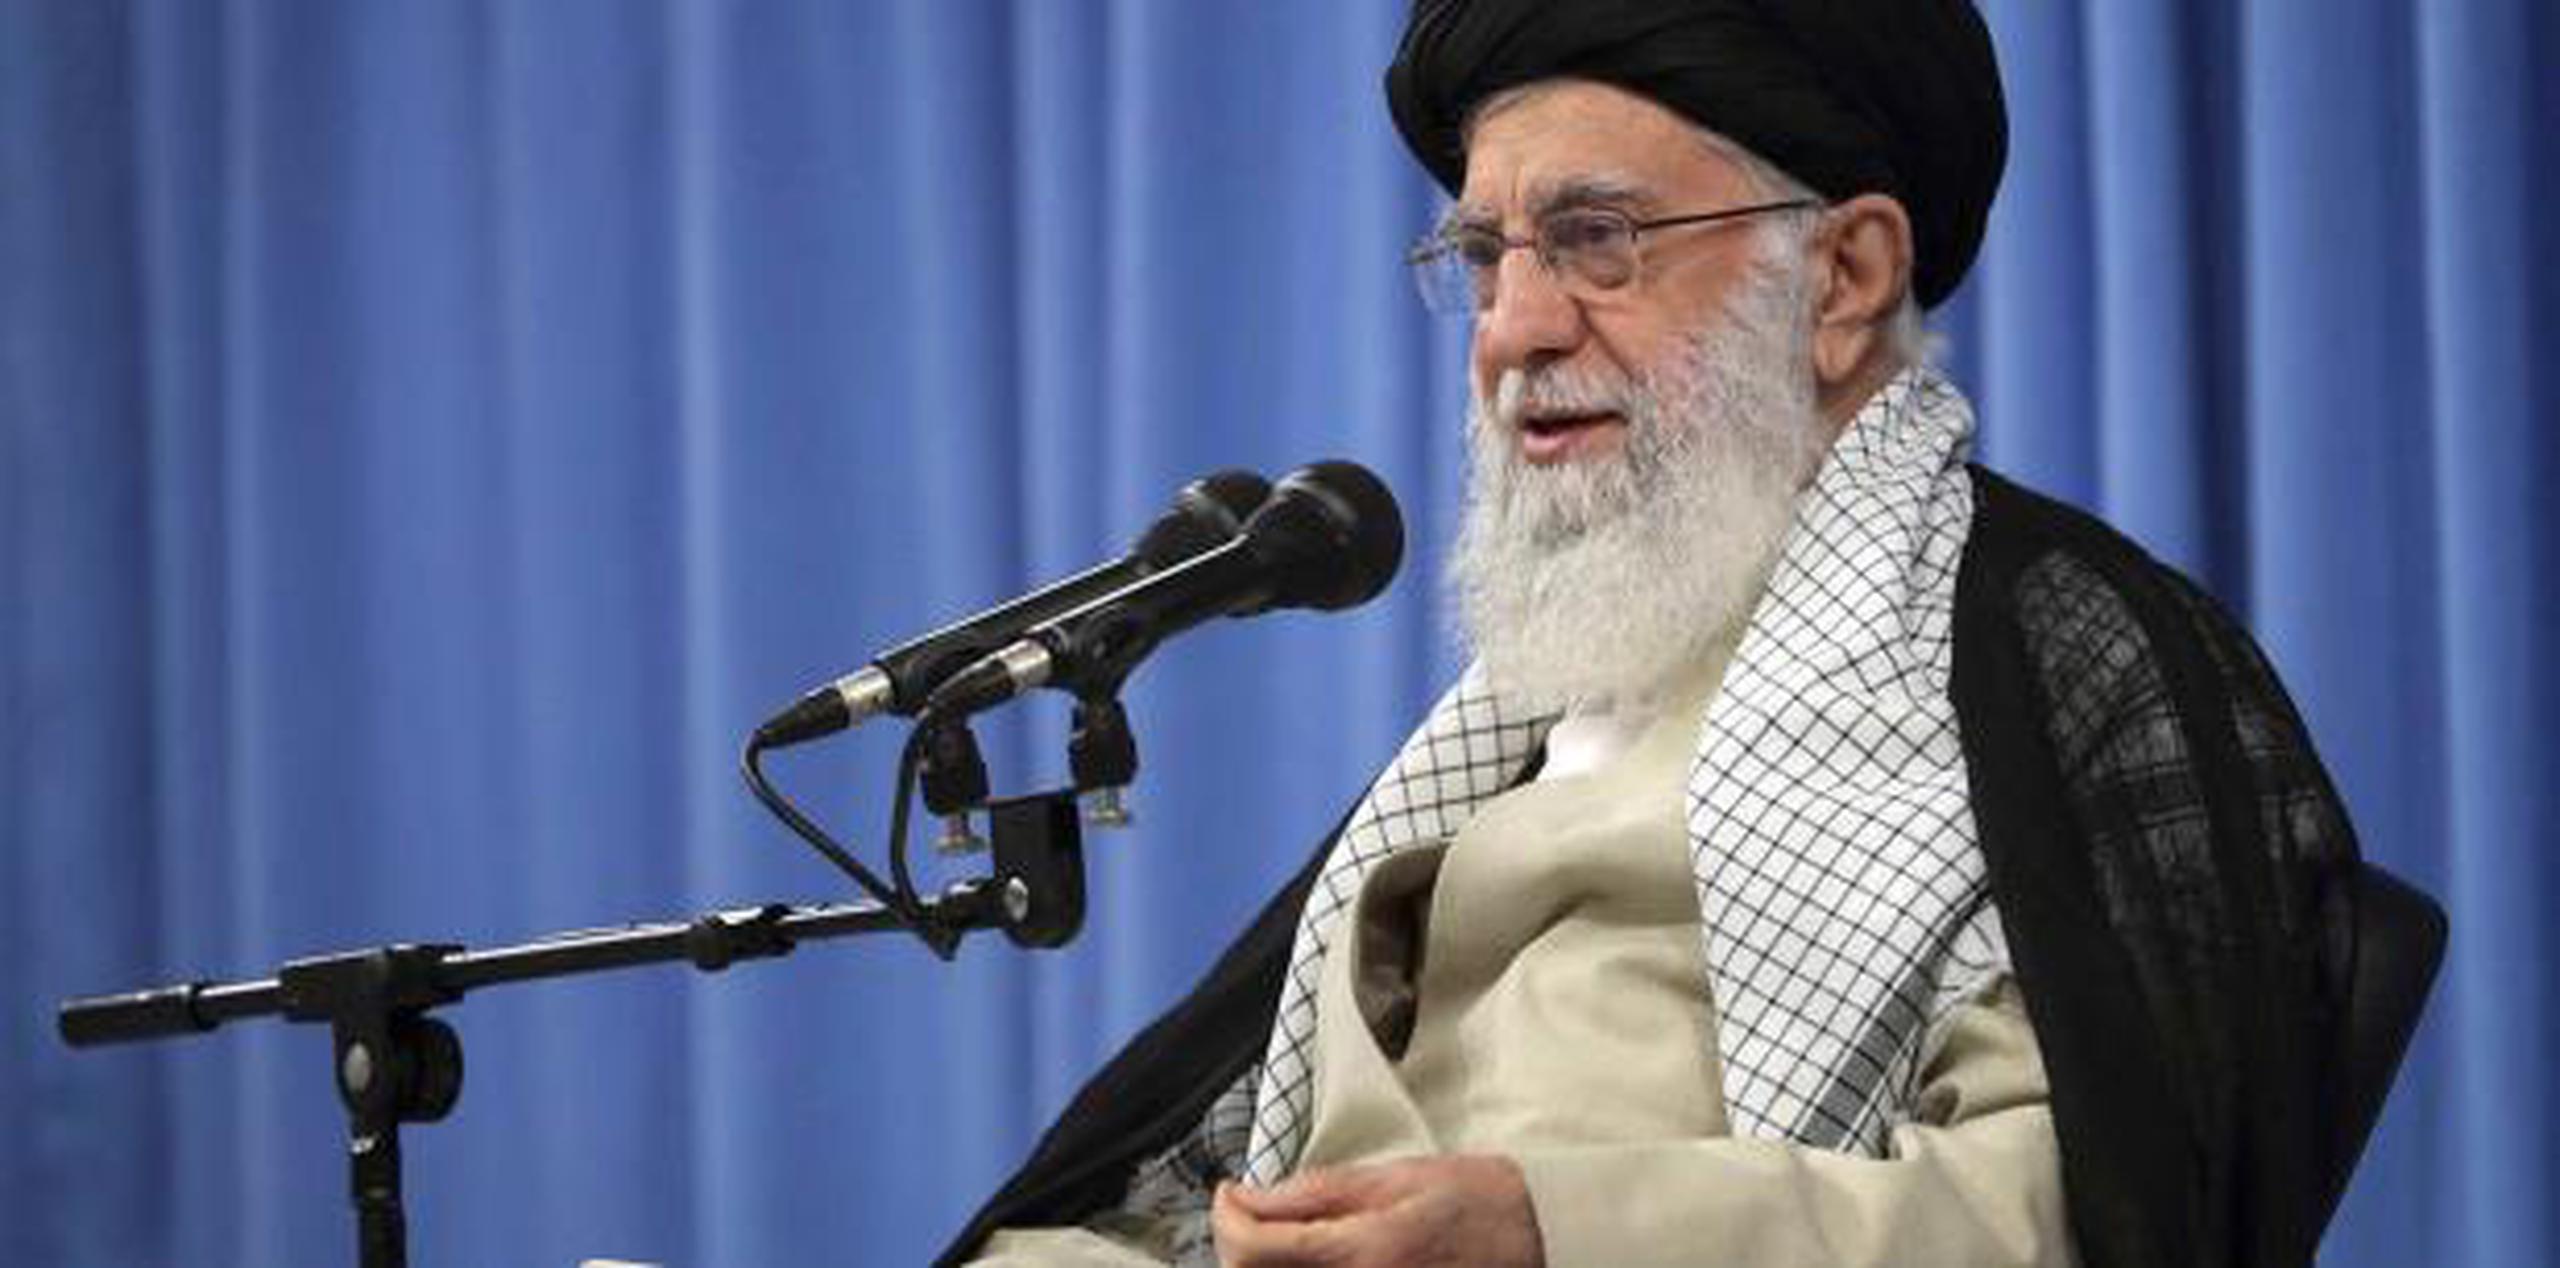 El líder iraní dijo que Estados Unidos quiere demostrar que su “política de máxima presión” hacia Irán tiene éxito y "tenemos que demostrar que esa estrategia no significa nada para la nación iraní”. (AP)